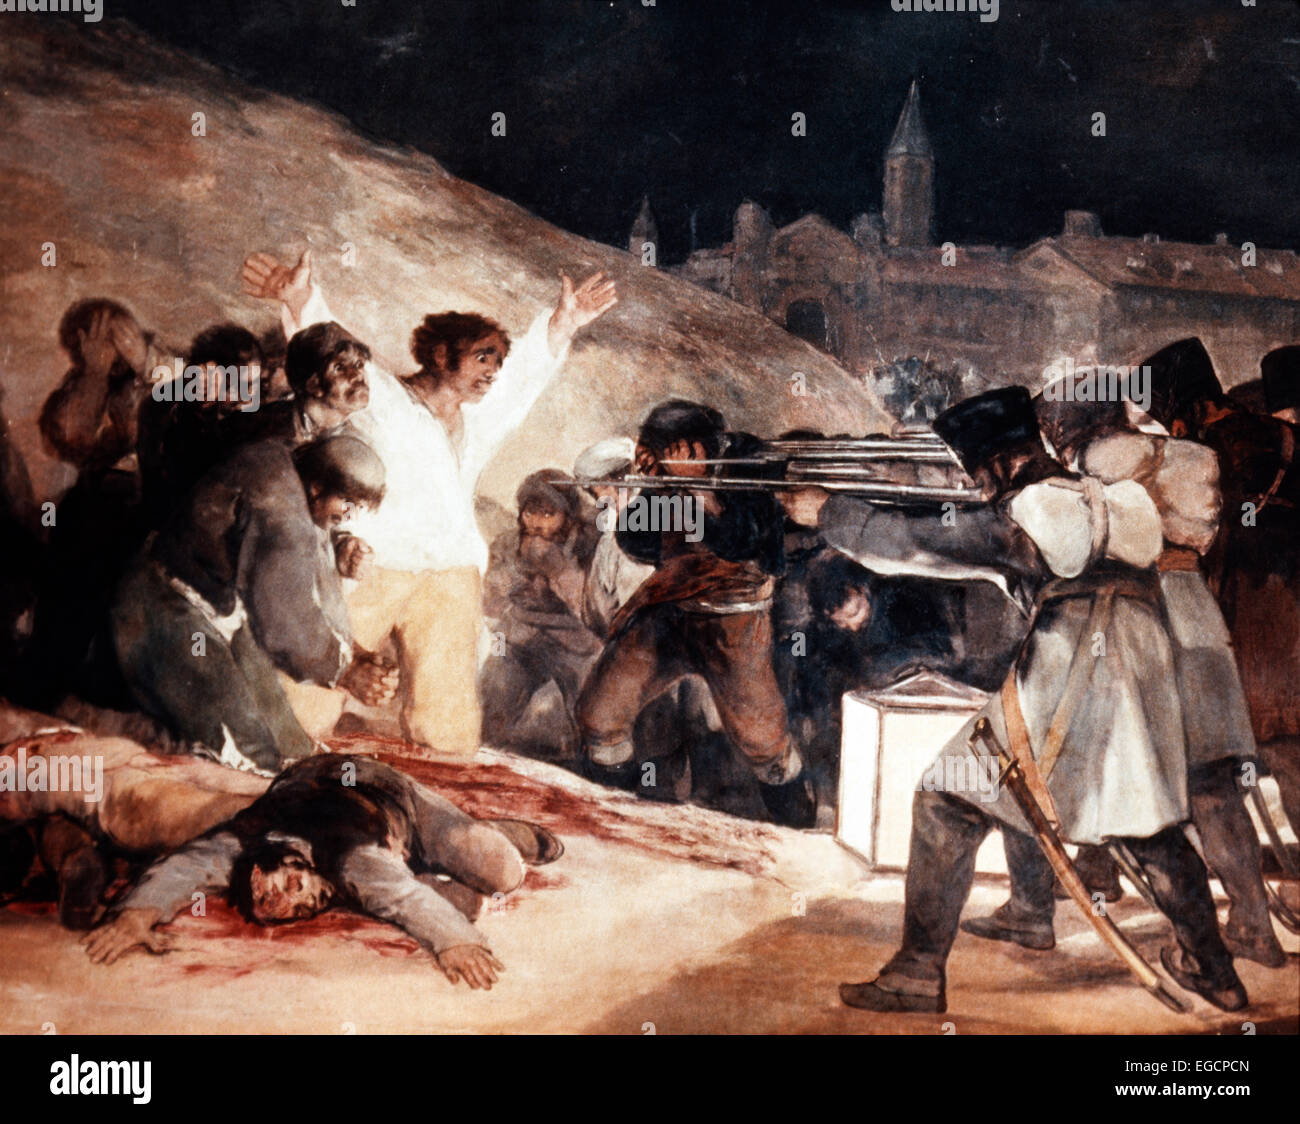 L'EXÉCUTION DE LA PEINTURE DE GOYA REBELLES Soldats français tirant des mousquets à GROUPE D'HOMMES RÉVOLUTIONNAIRES Troisième de mai 1808 Banque D'Images